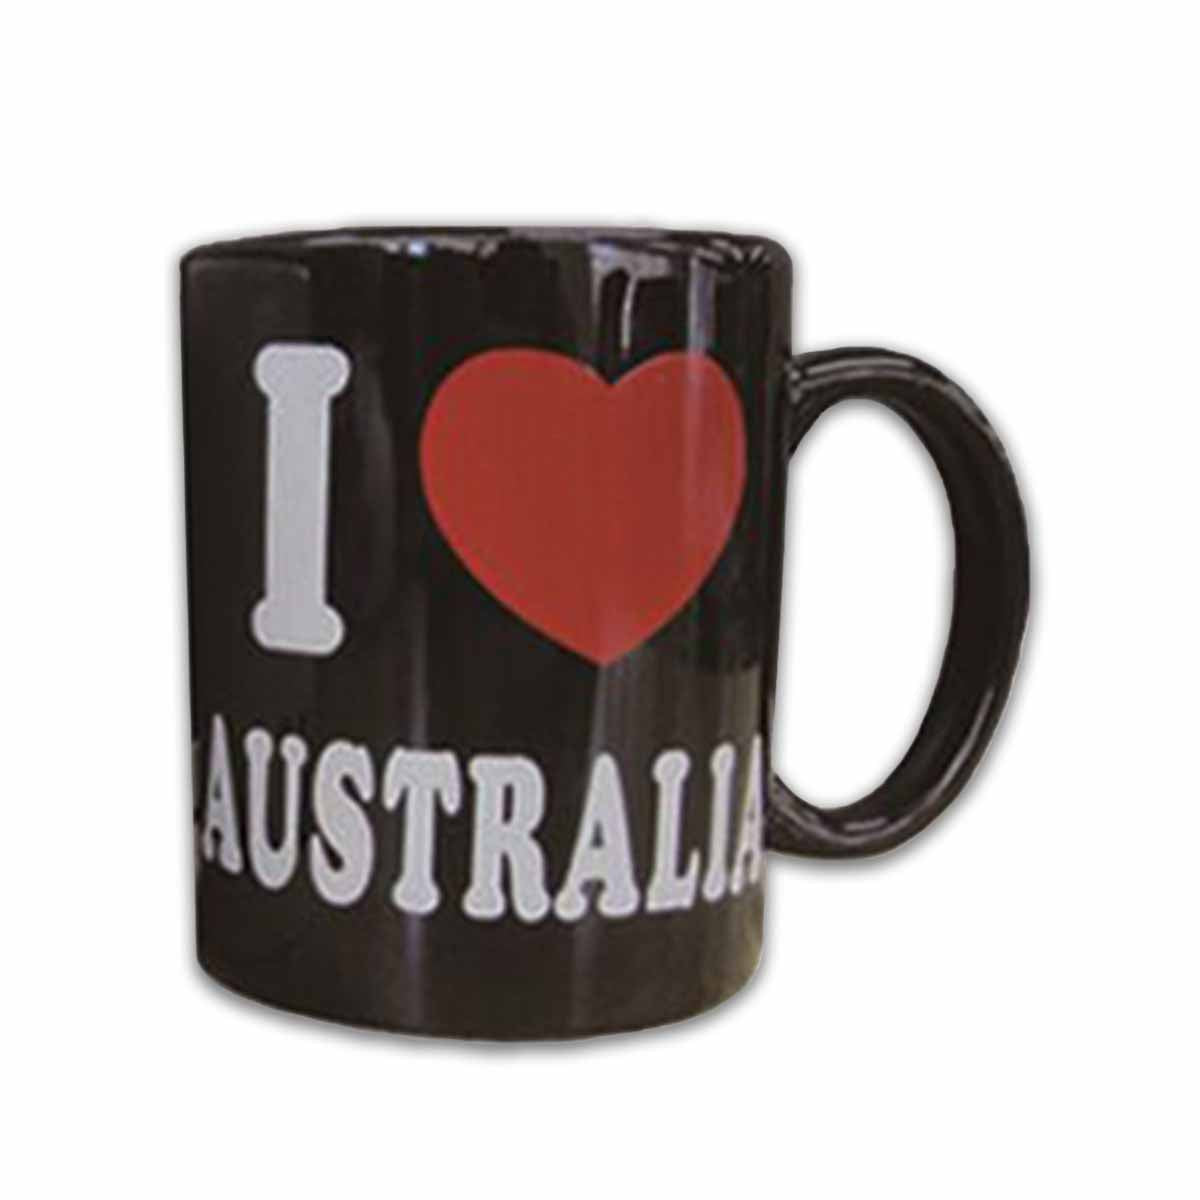 Mug I Love AUS